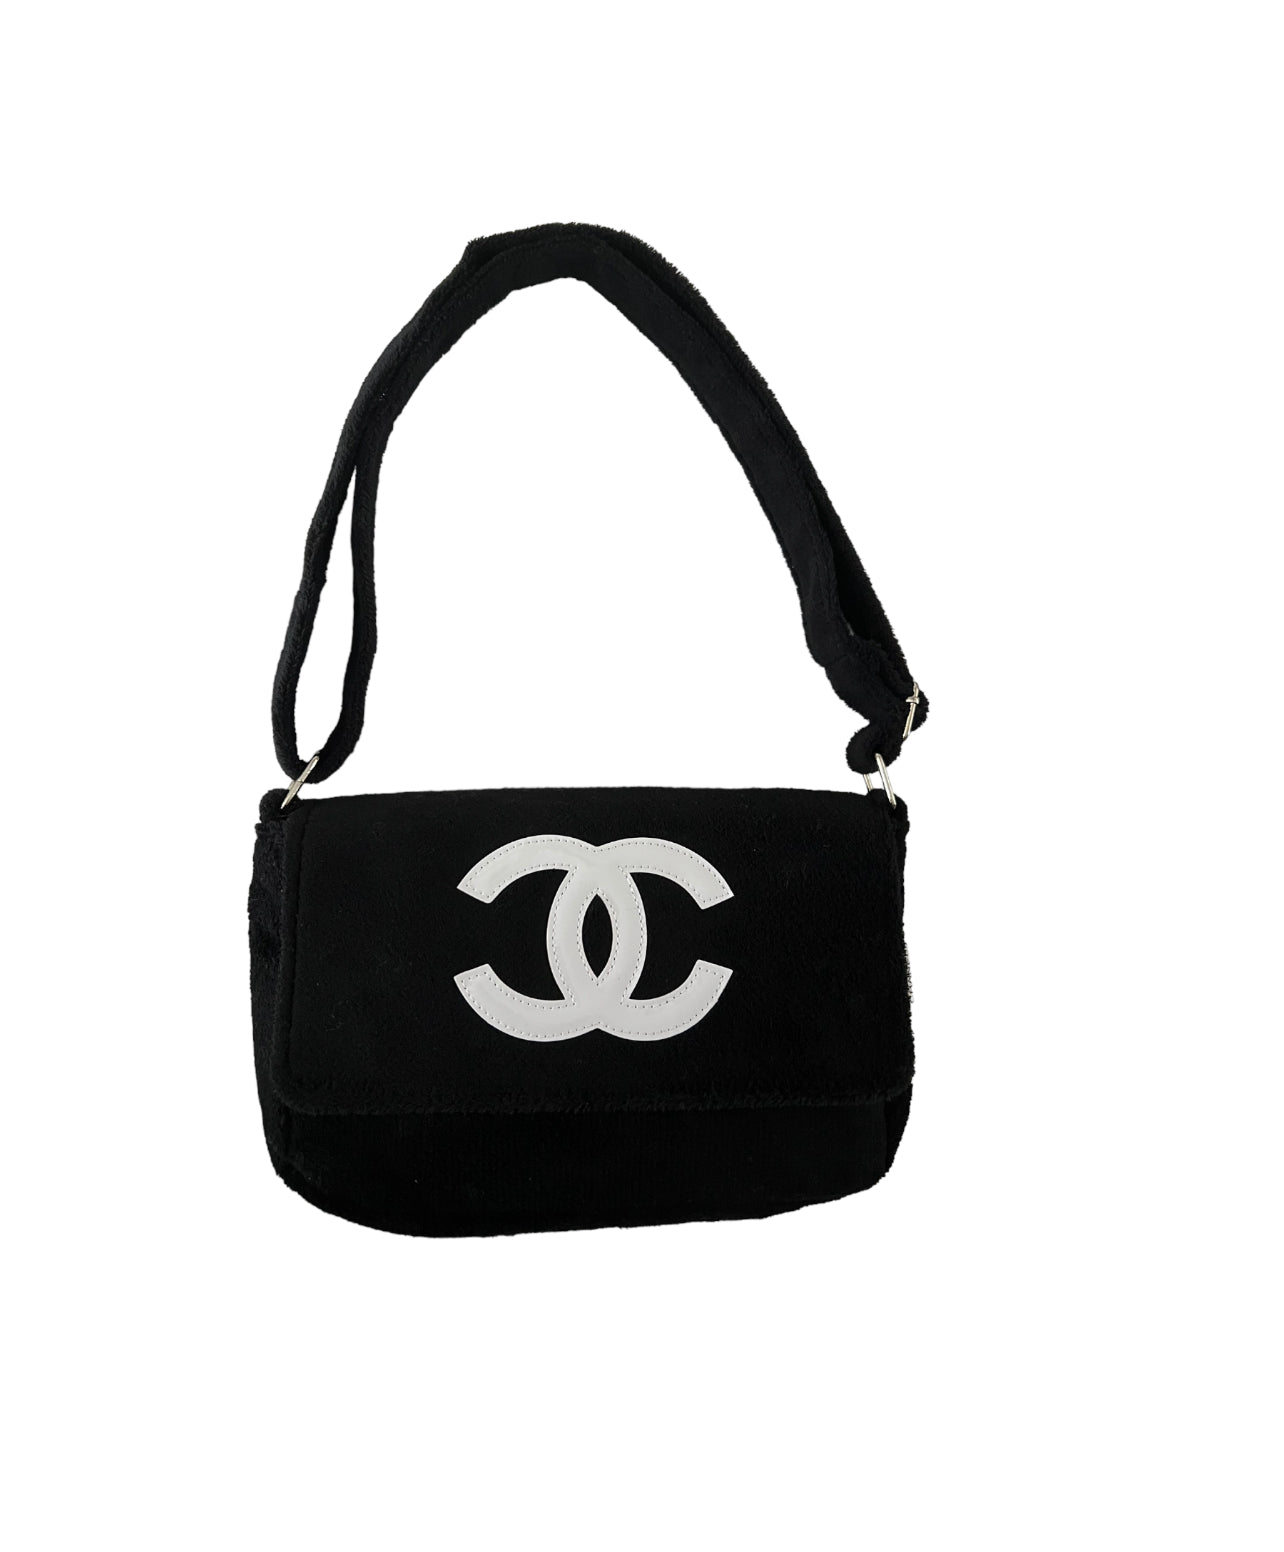 Chanel Vip Bag